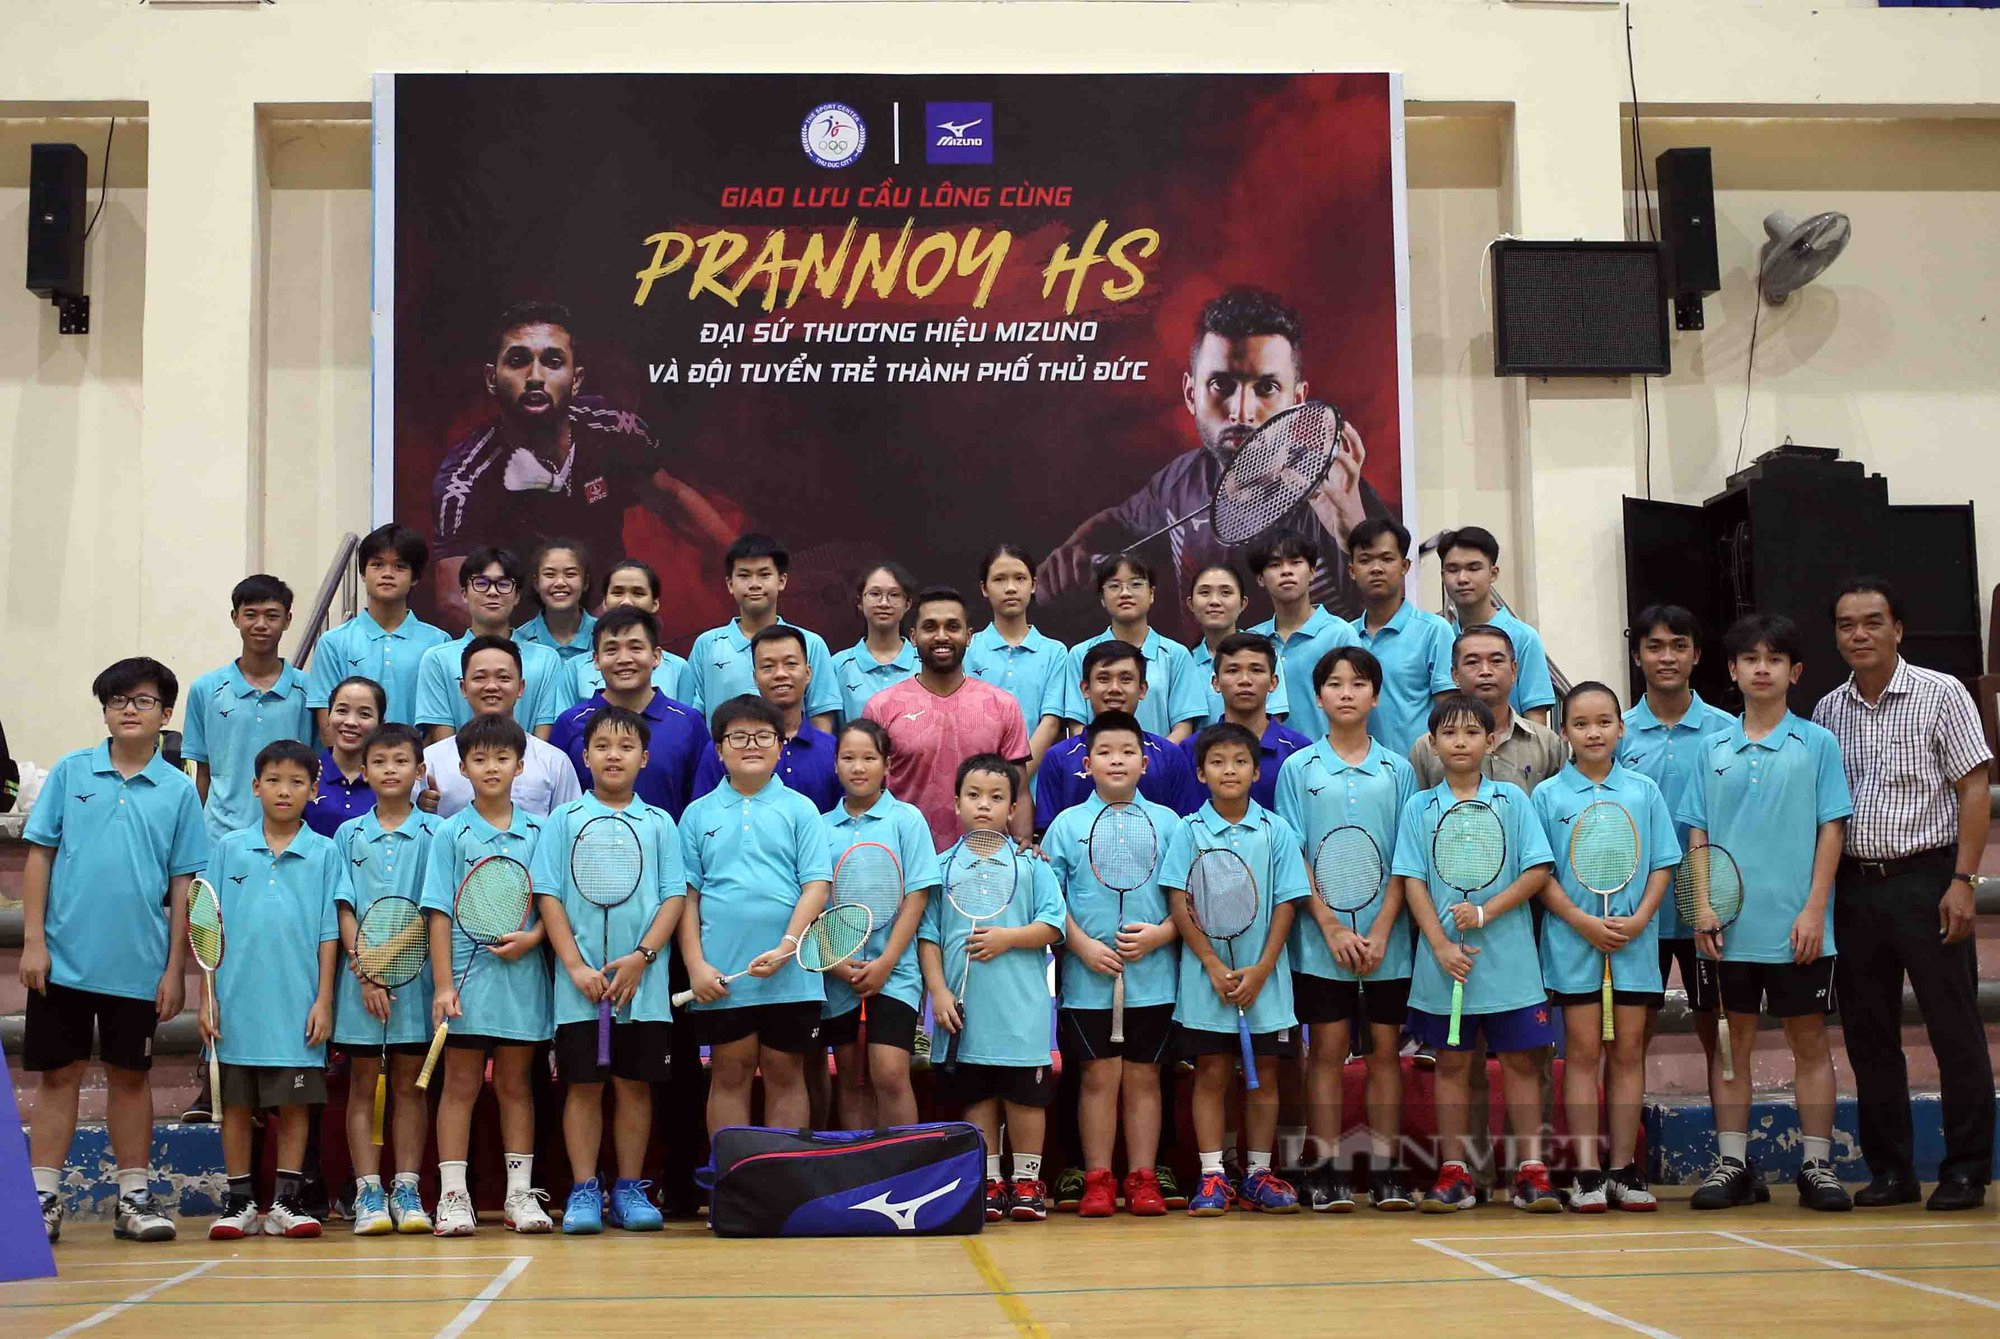 Nhà vô địch cầu lông thế giới Prannoy H.S truyền lửa đam mê cho trẻ em TP.HCM - Ảnh 3.